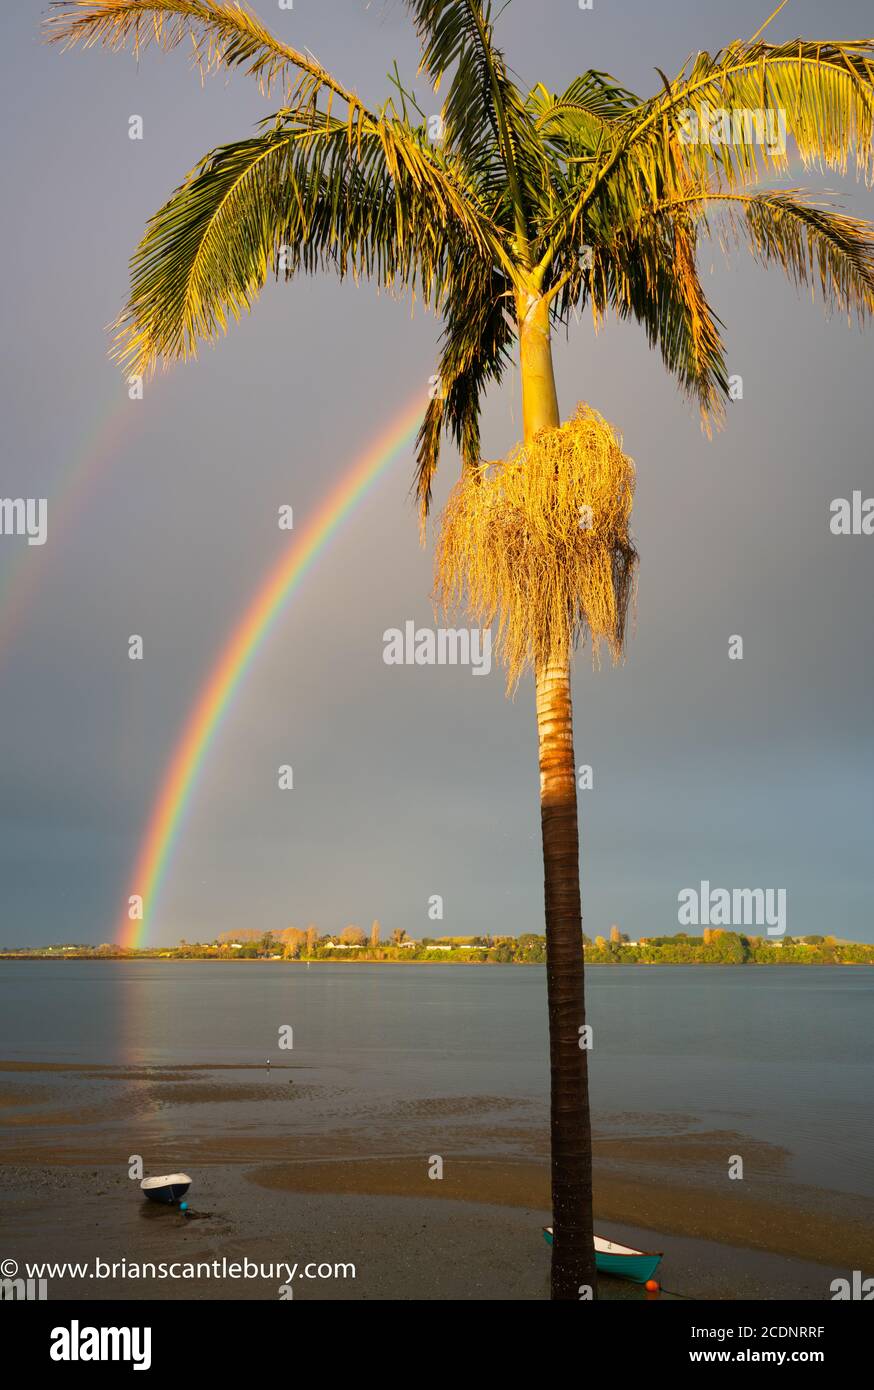 Regenbogen fällt zum Horizont dann reflektiert über Bucht zu Schlauchboot  sitzen am Strand spät Sonne beleuchtet Palme Teer mit hängenden Samen und  fernen Land Stockfotografie - Alamy